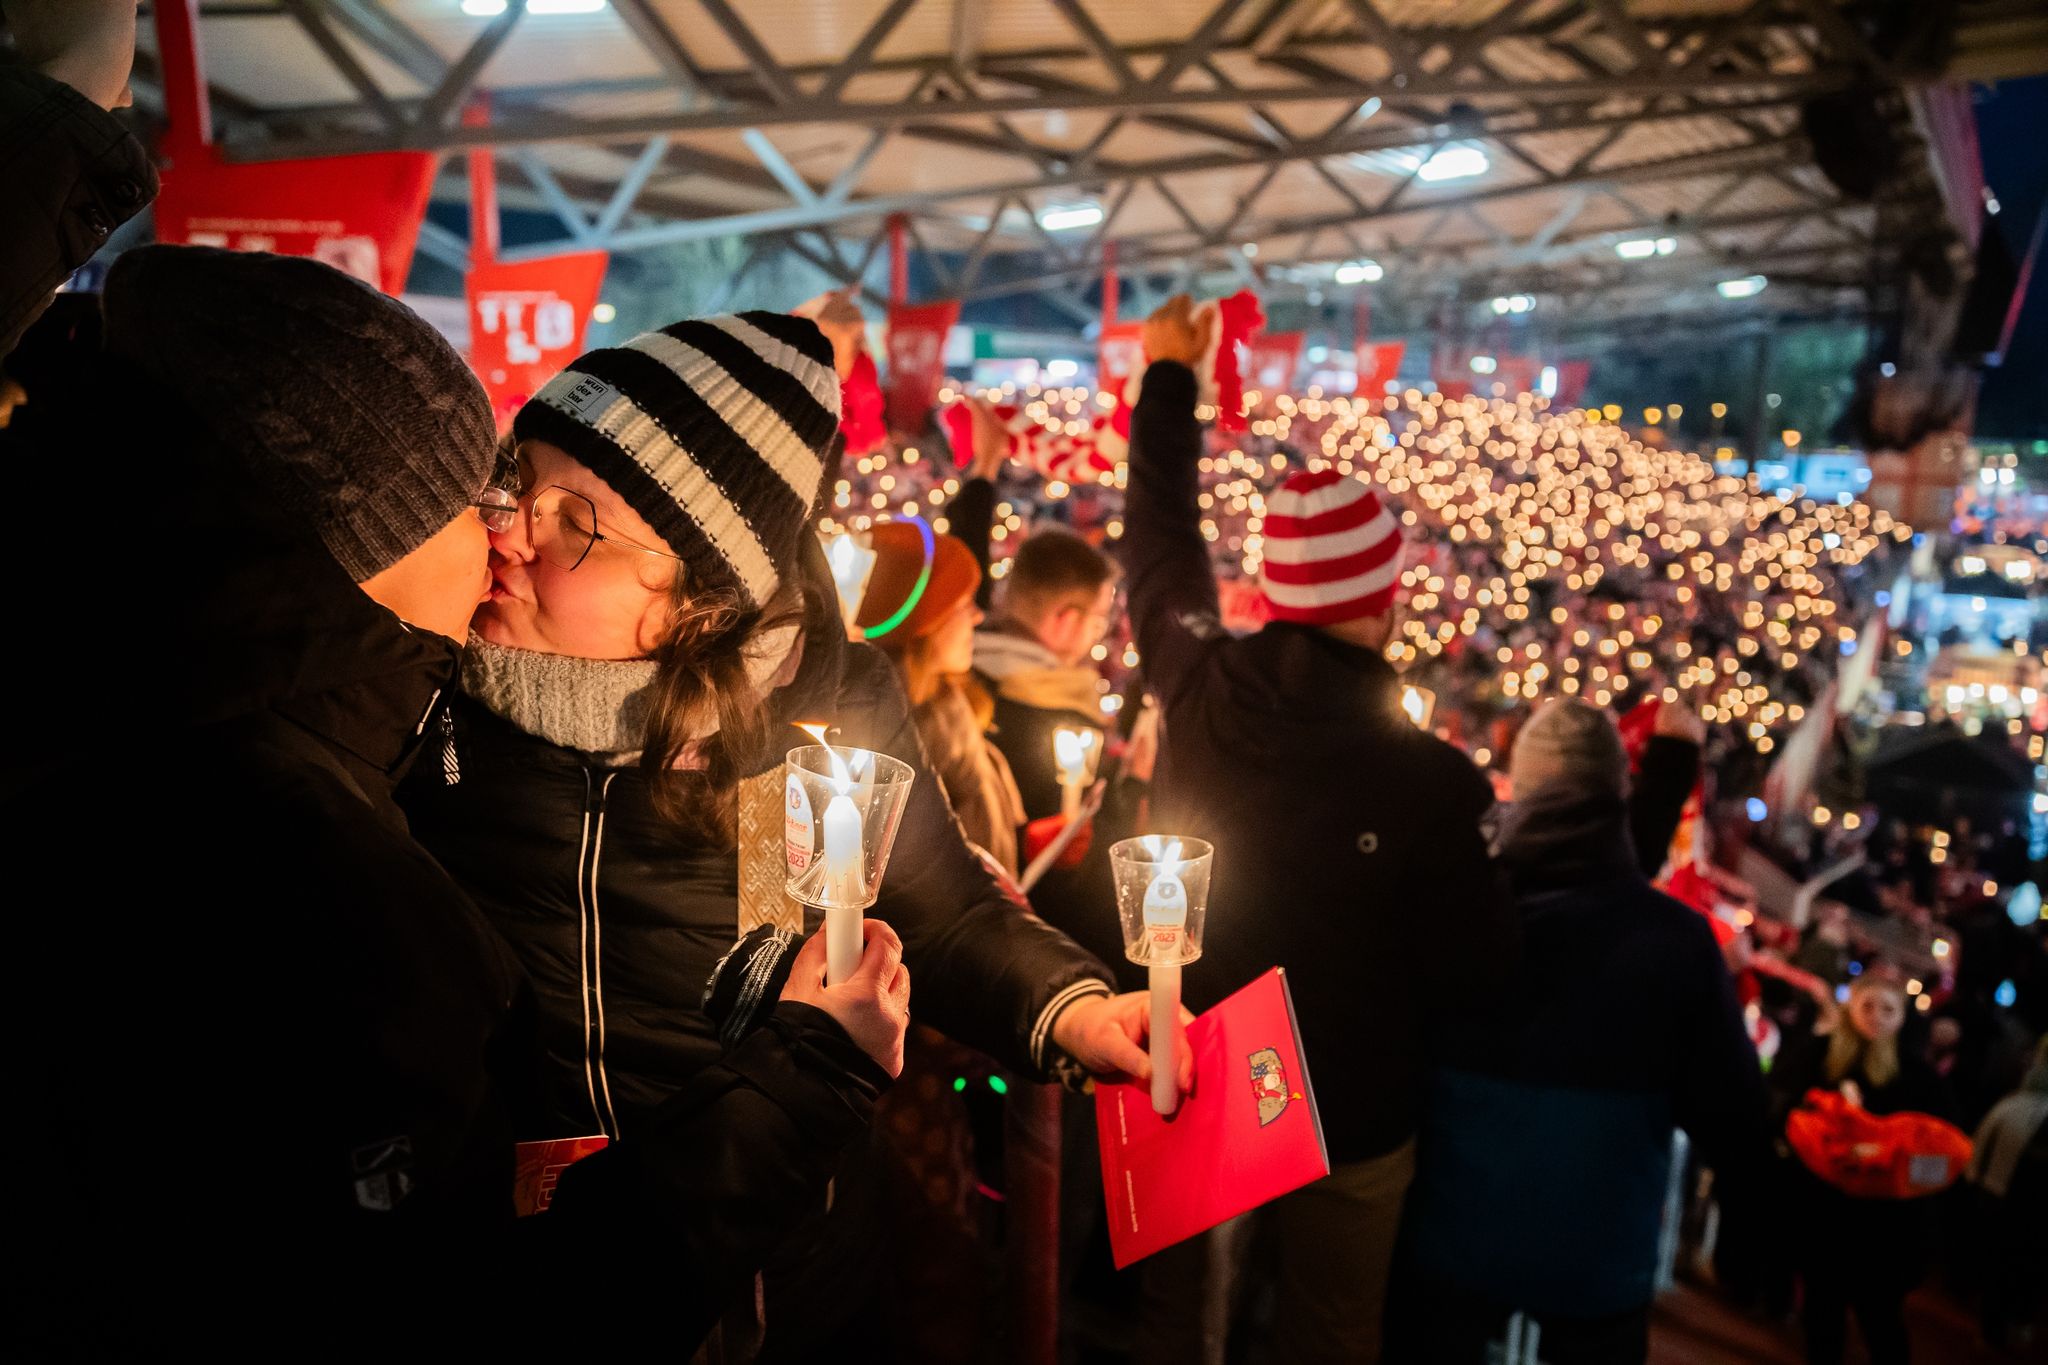 Besinnliche Klänge: Beim Weihnachtssingen im Stadion an der Alten Försterei in Berlin liegt Liebe in der Luft!